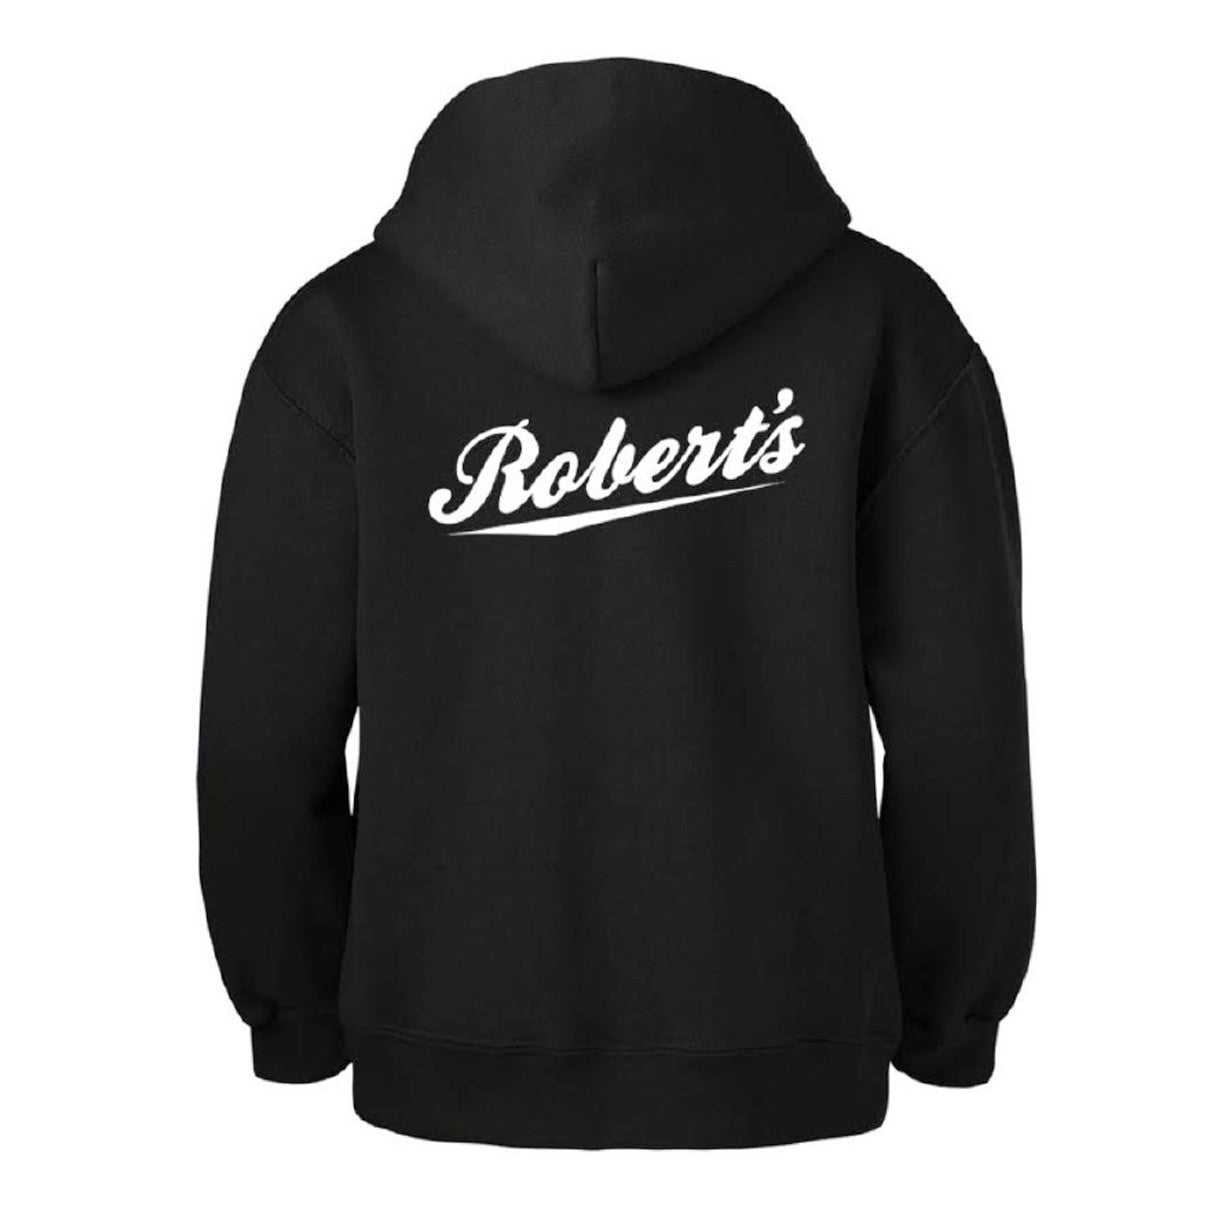 Robert's Hoodie - Black